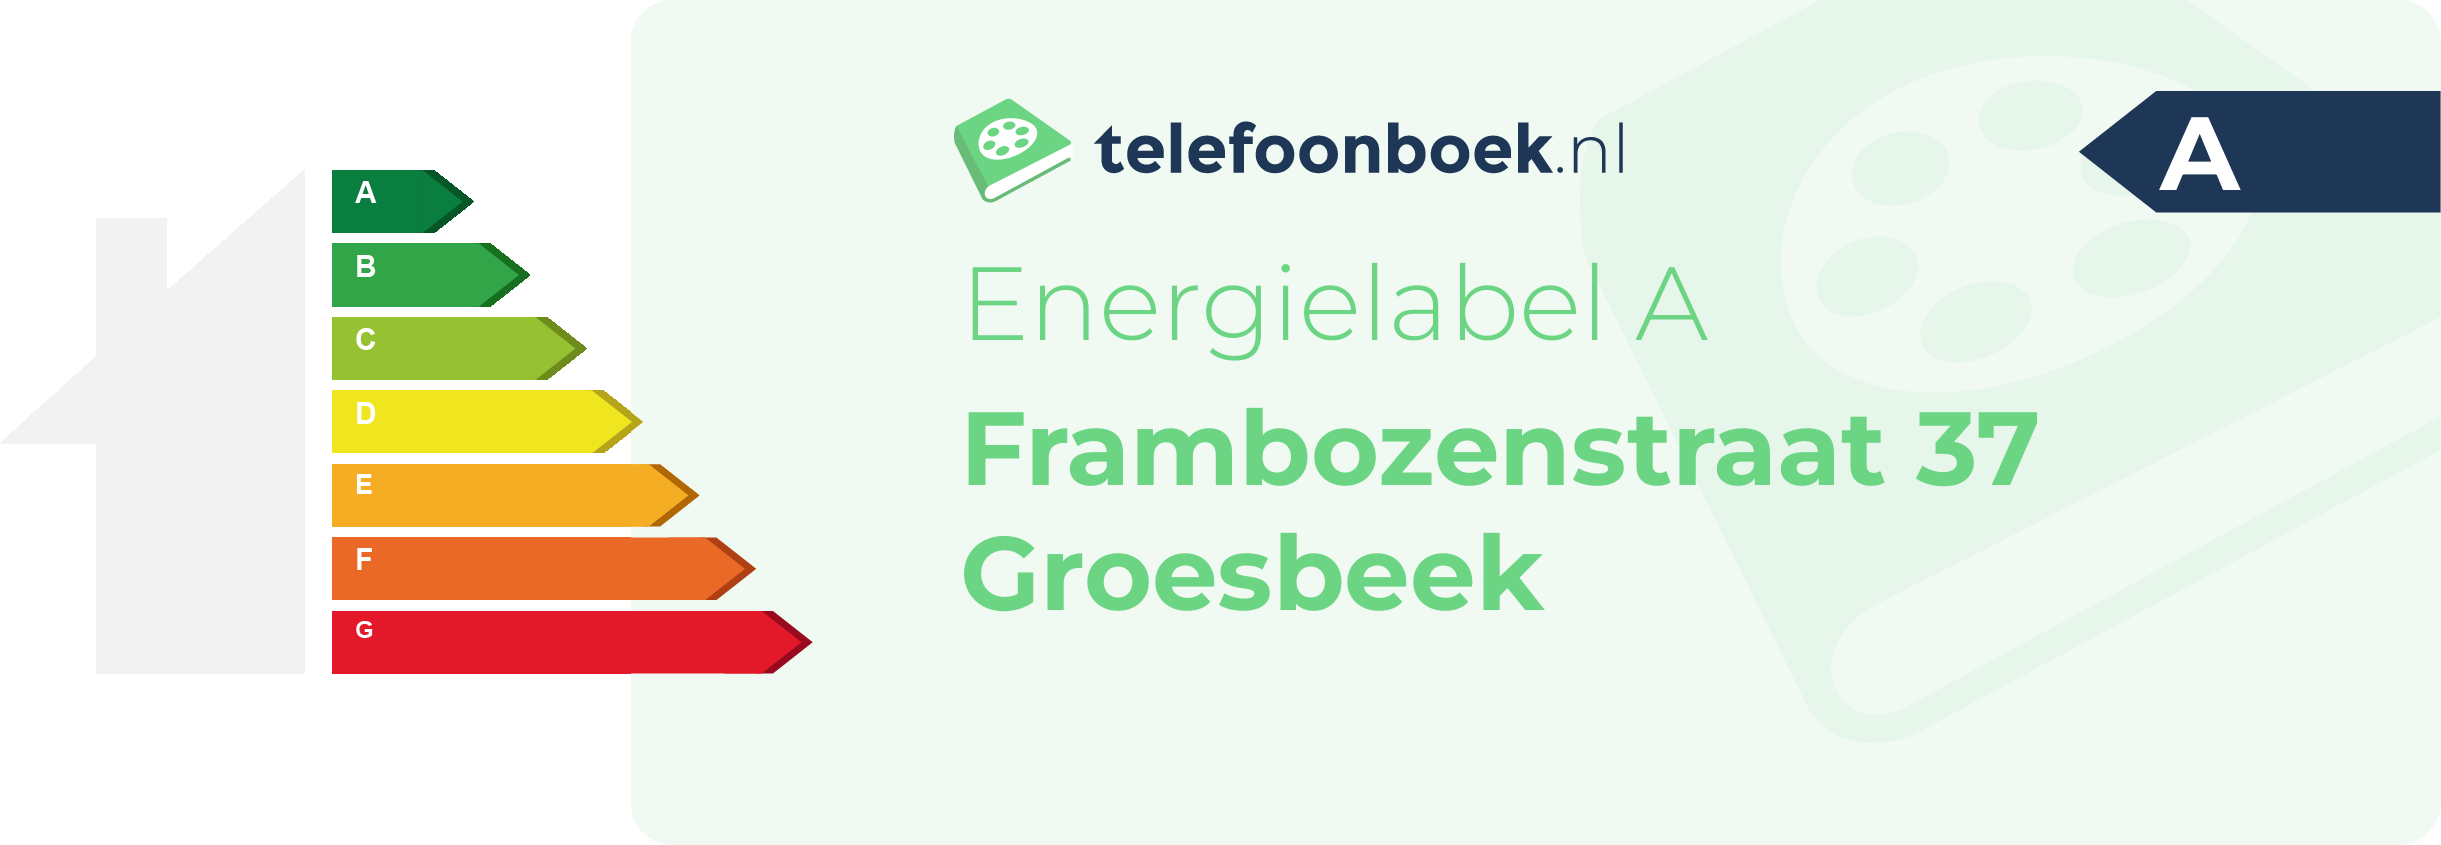 Energielabel Frambozenstraat 37 Groesbeek